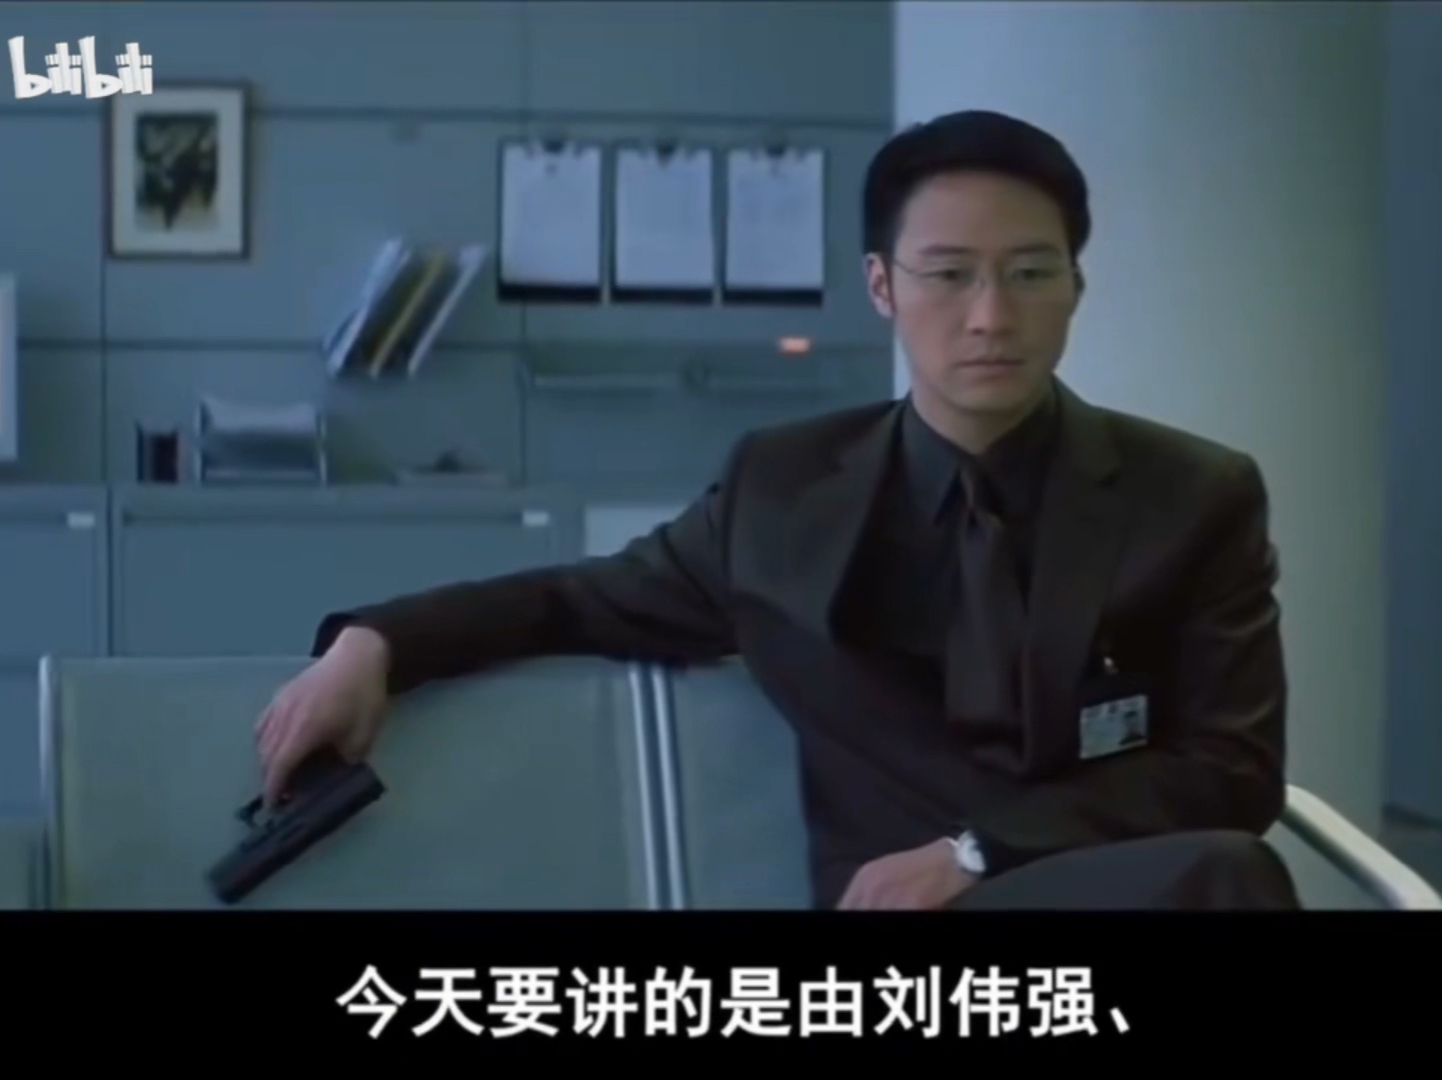 深入解读《无间道3》终极无间 重温经典香港黑帮电影